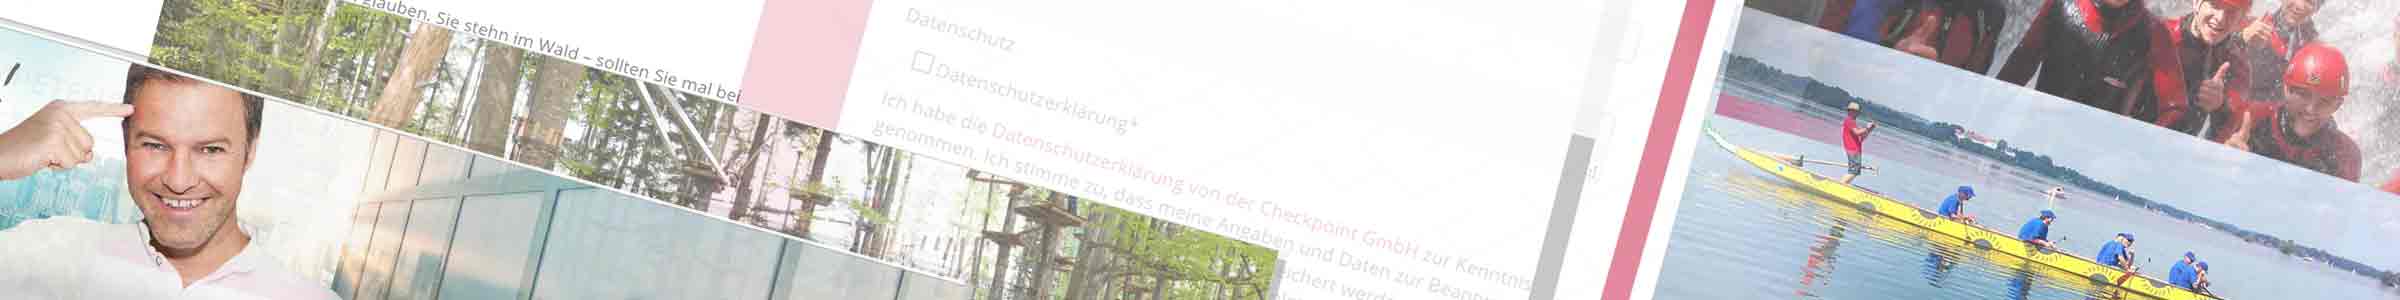 Galerien und Bilder bei der Checkpoint GmbH -Seminare und Trainings für Manager, Führungskräfte, Teams und Mitarbeiter - Bayern, München, Südbayern, Chiemsee und Chiemgau